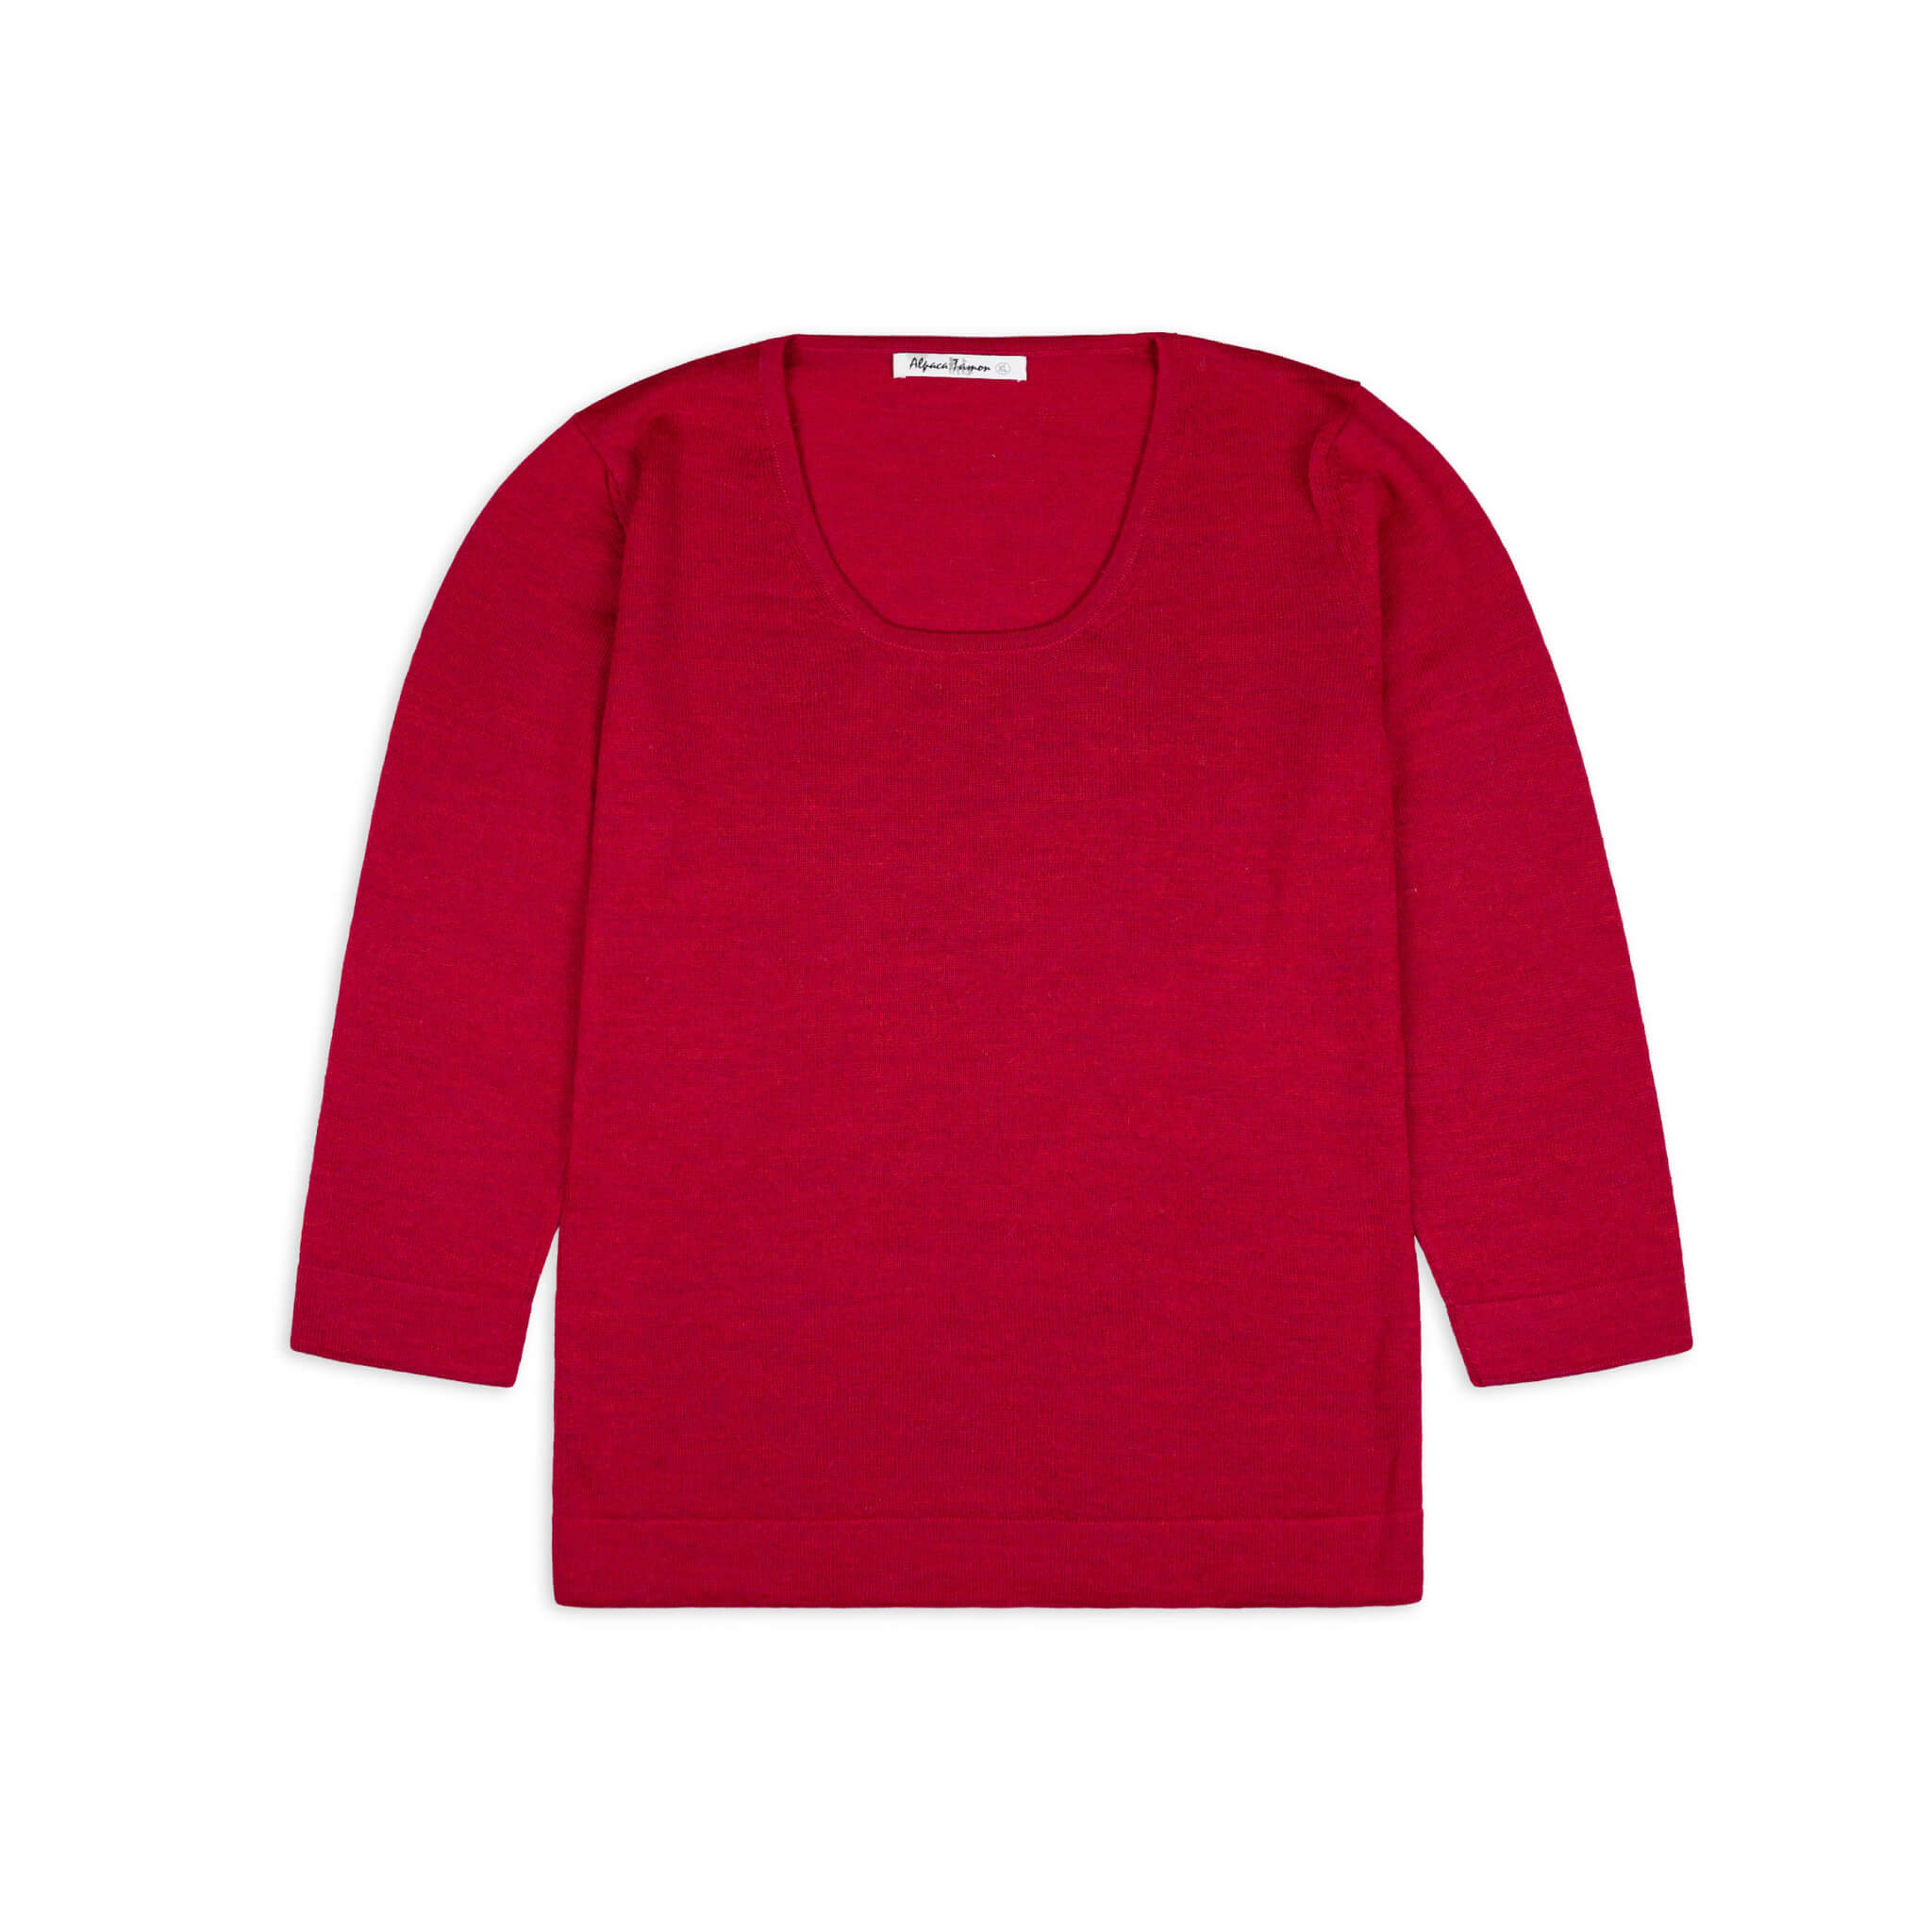 UNA Alpaka Pullover für Damen von Alpakin in rot von vorne